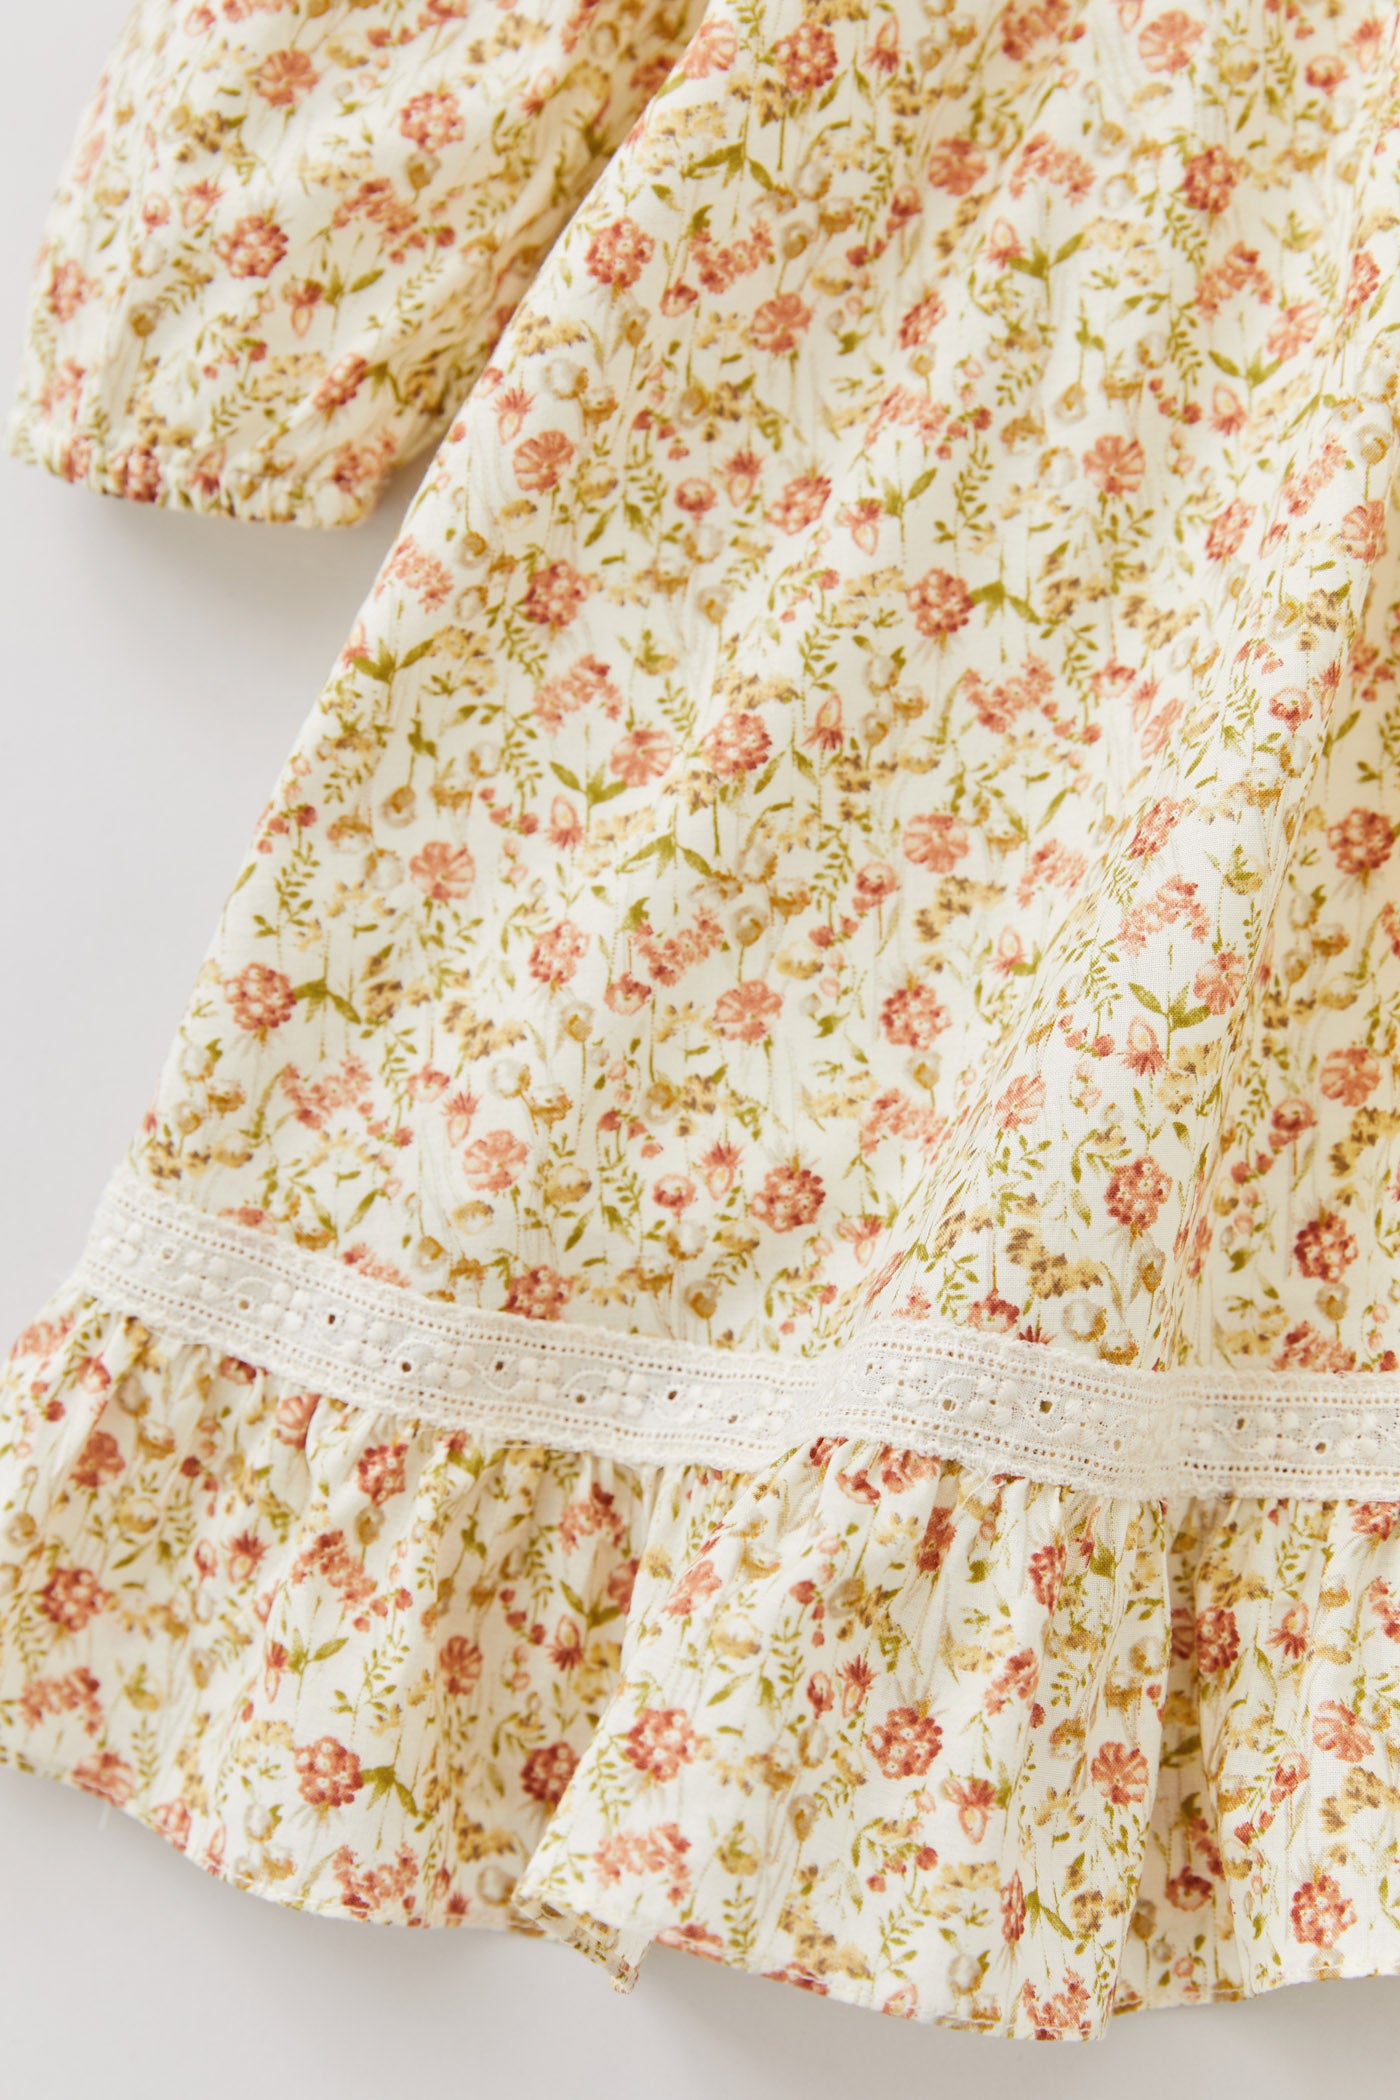 Baby Milkshake Dress in Beige Tangerine Flowers - Designed by Ingrid Lewis - Strawberries & Cream